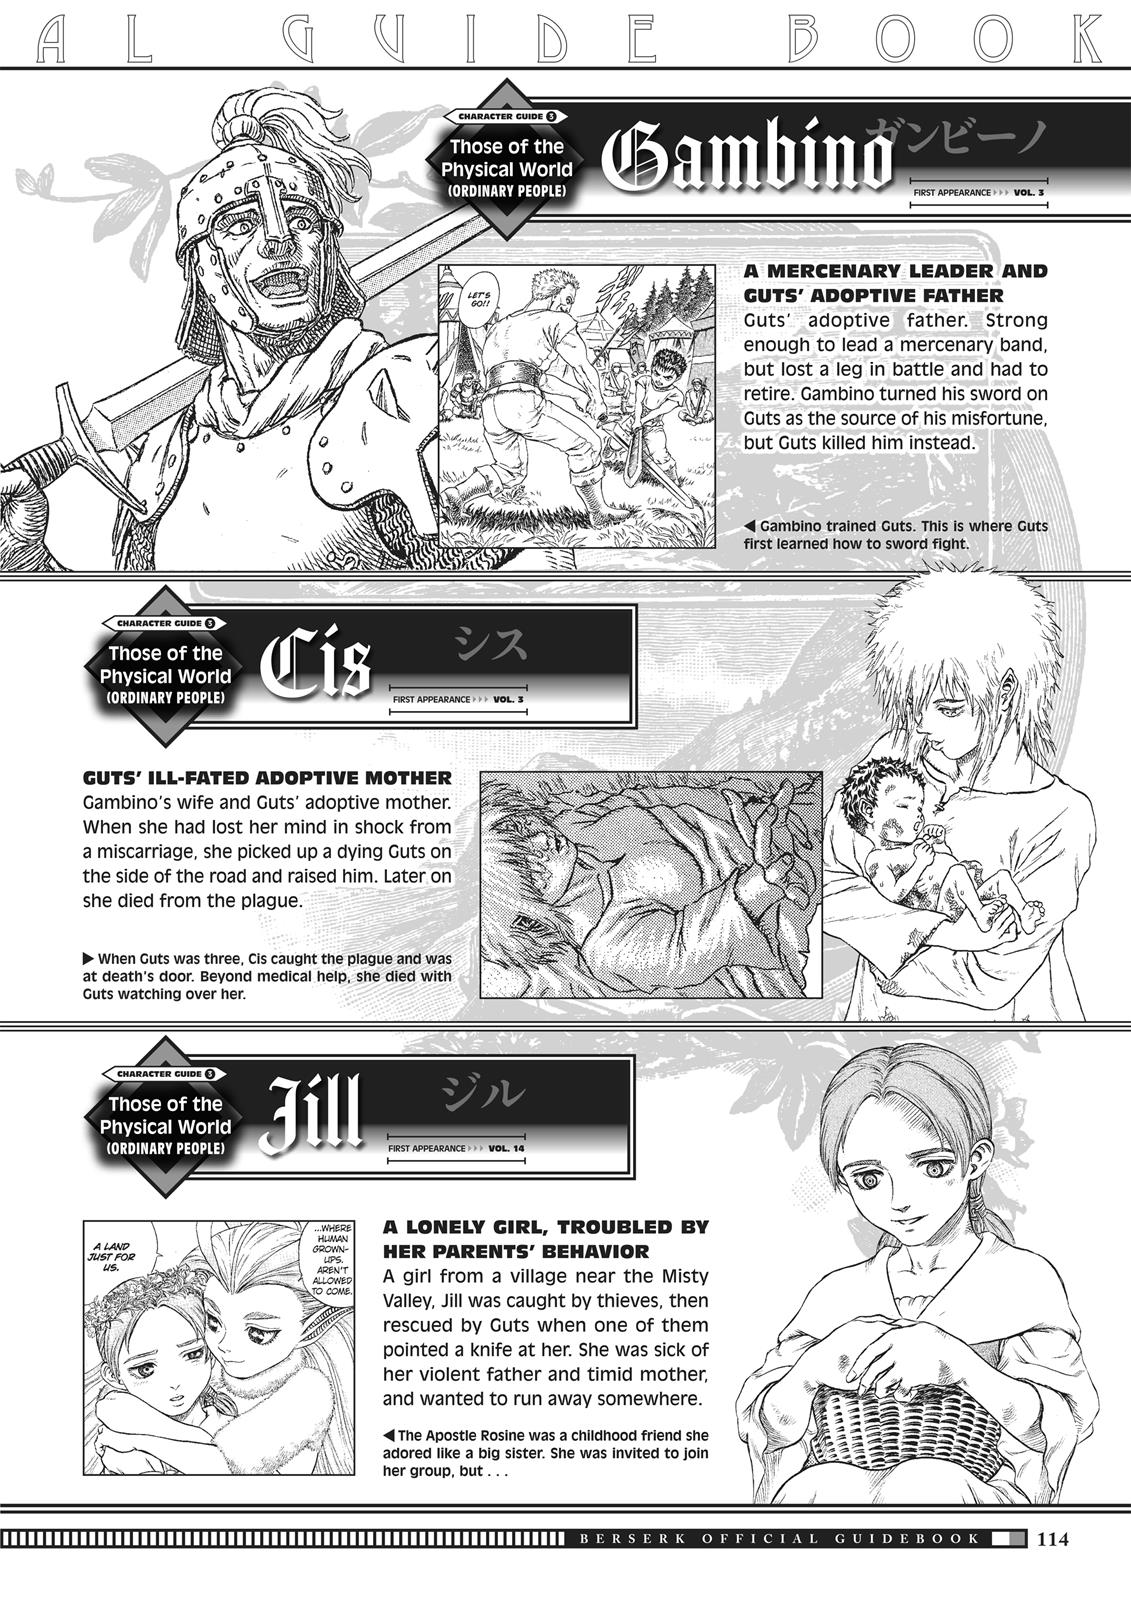 Berserk Manga Chapter 350.5 image 112